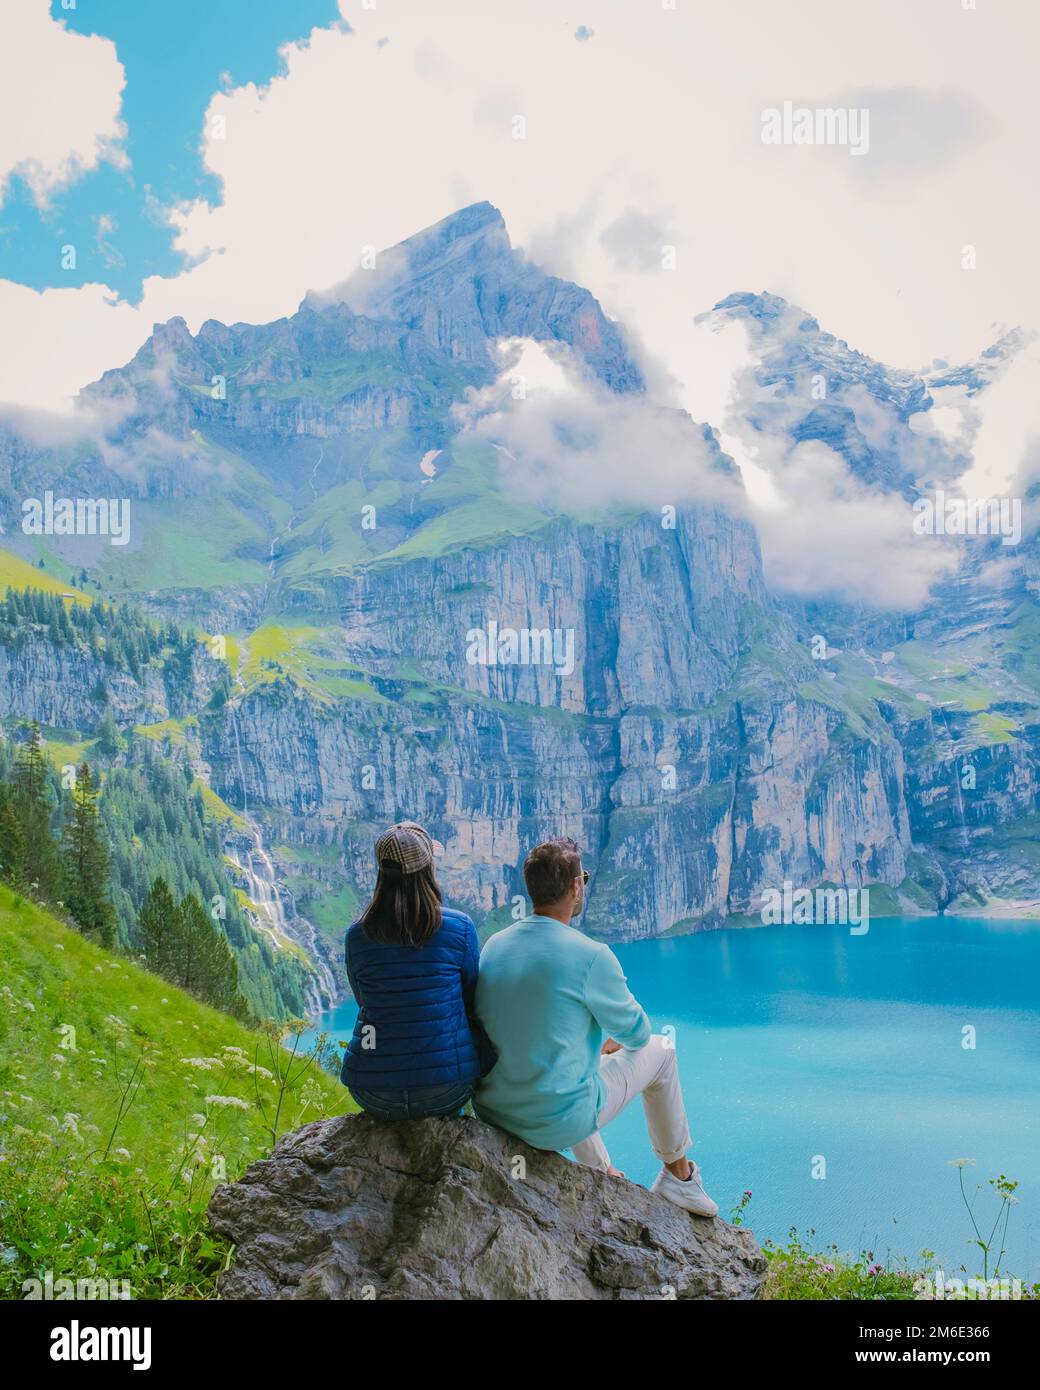 Couple visite du lac Oeschinensee. Une merveilleuse scène en plein air dans les Alpes suisses avec montagne Bluemlisalp, emplacement du village de Kandersteg, couple de randonnée au bord du lac, homme et femme Banque D'Images